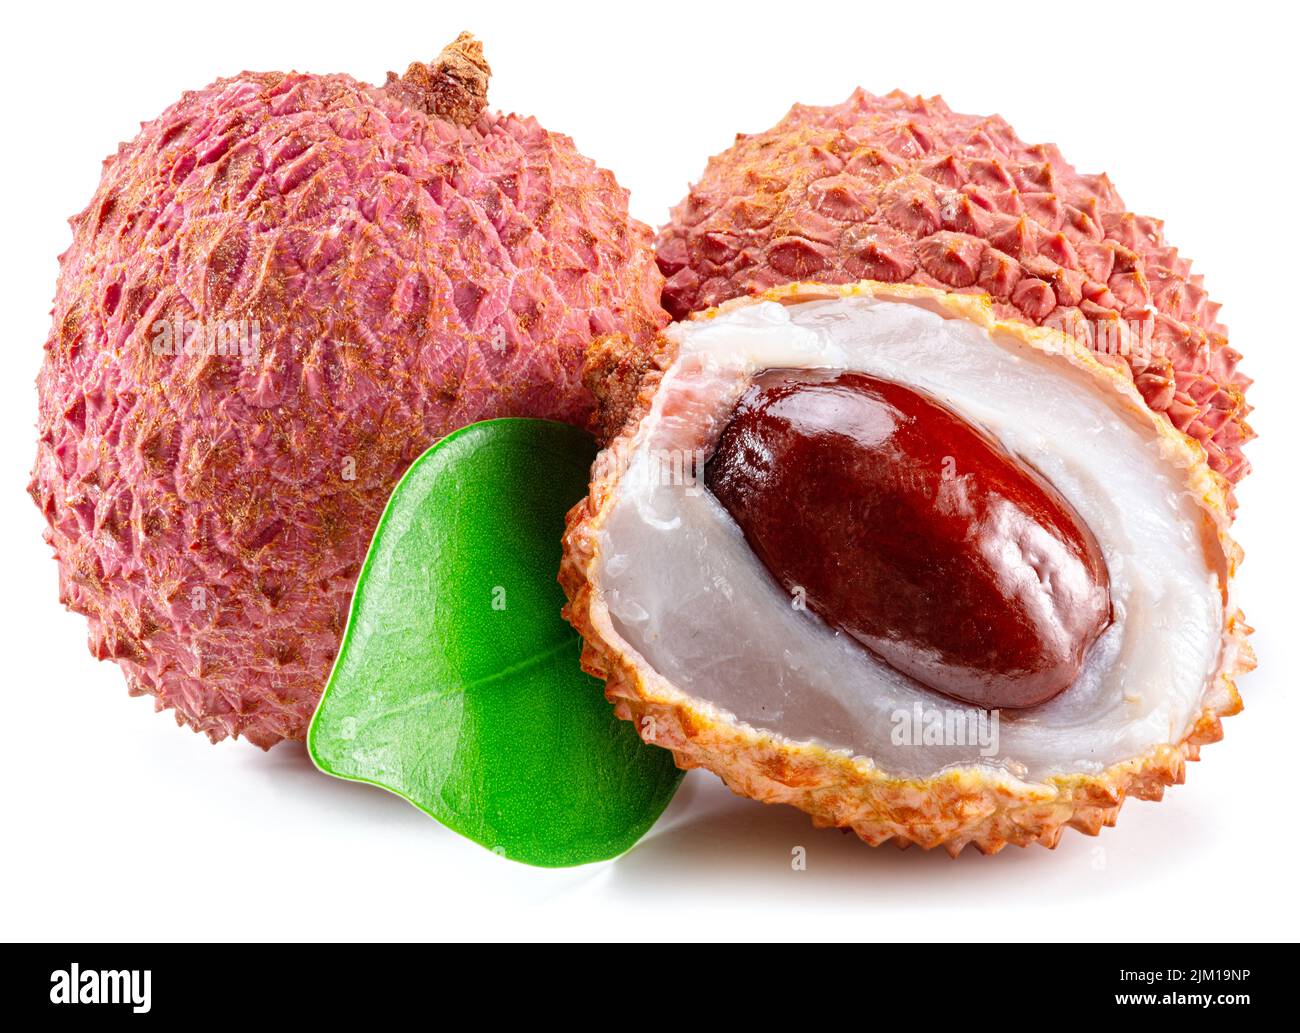 Whole and opened lychee fruit isolated on white background. Stock Photo